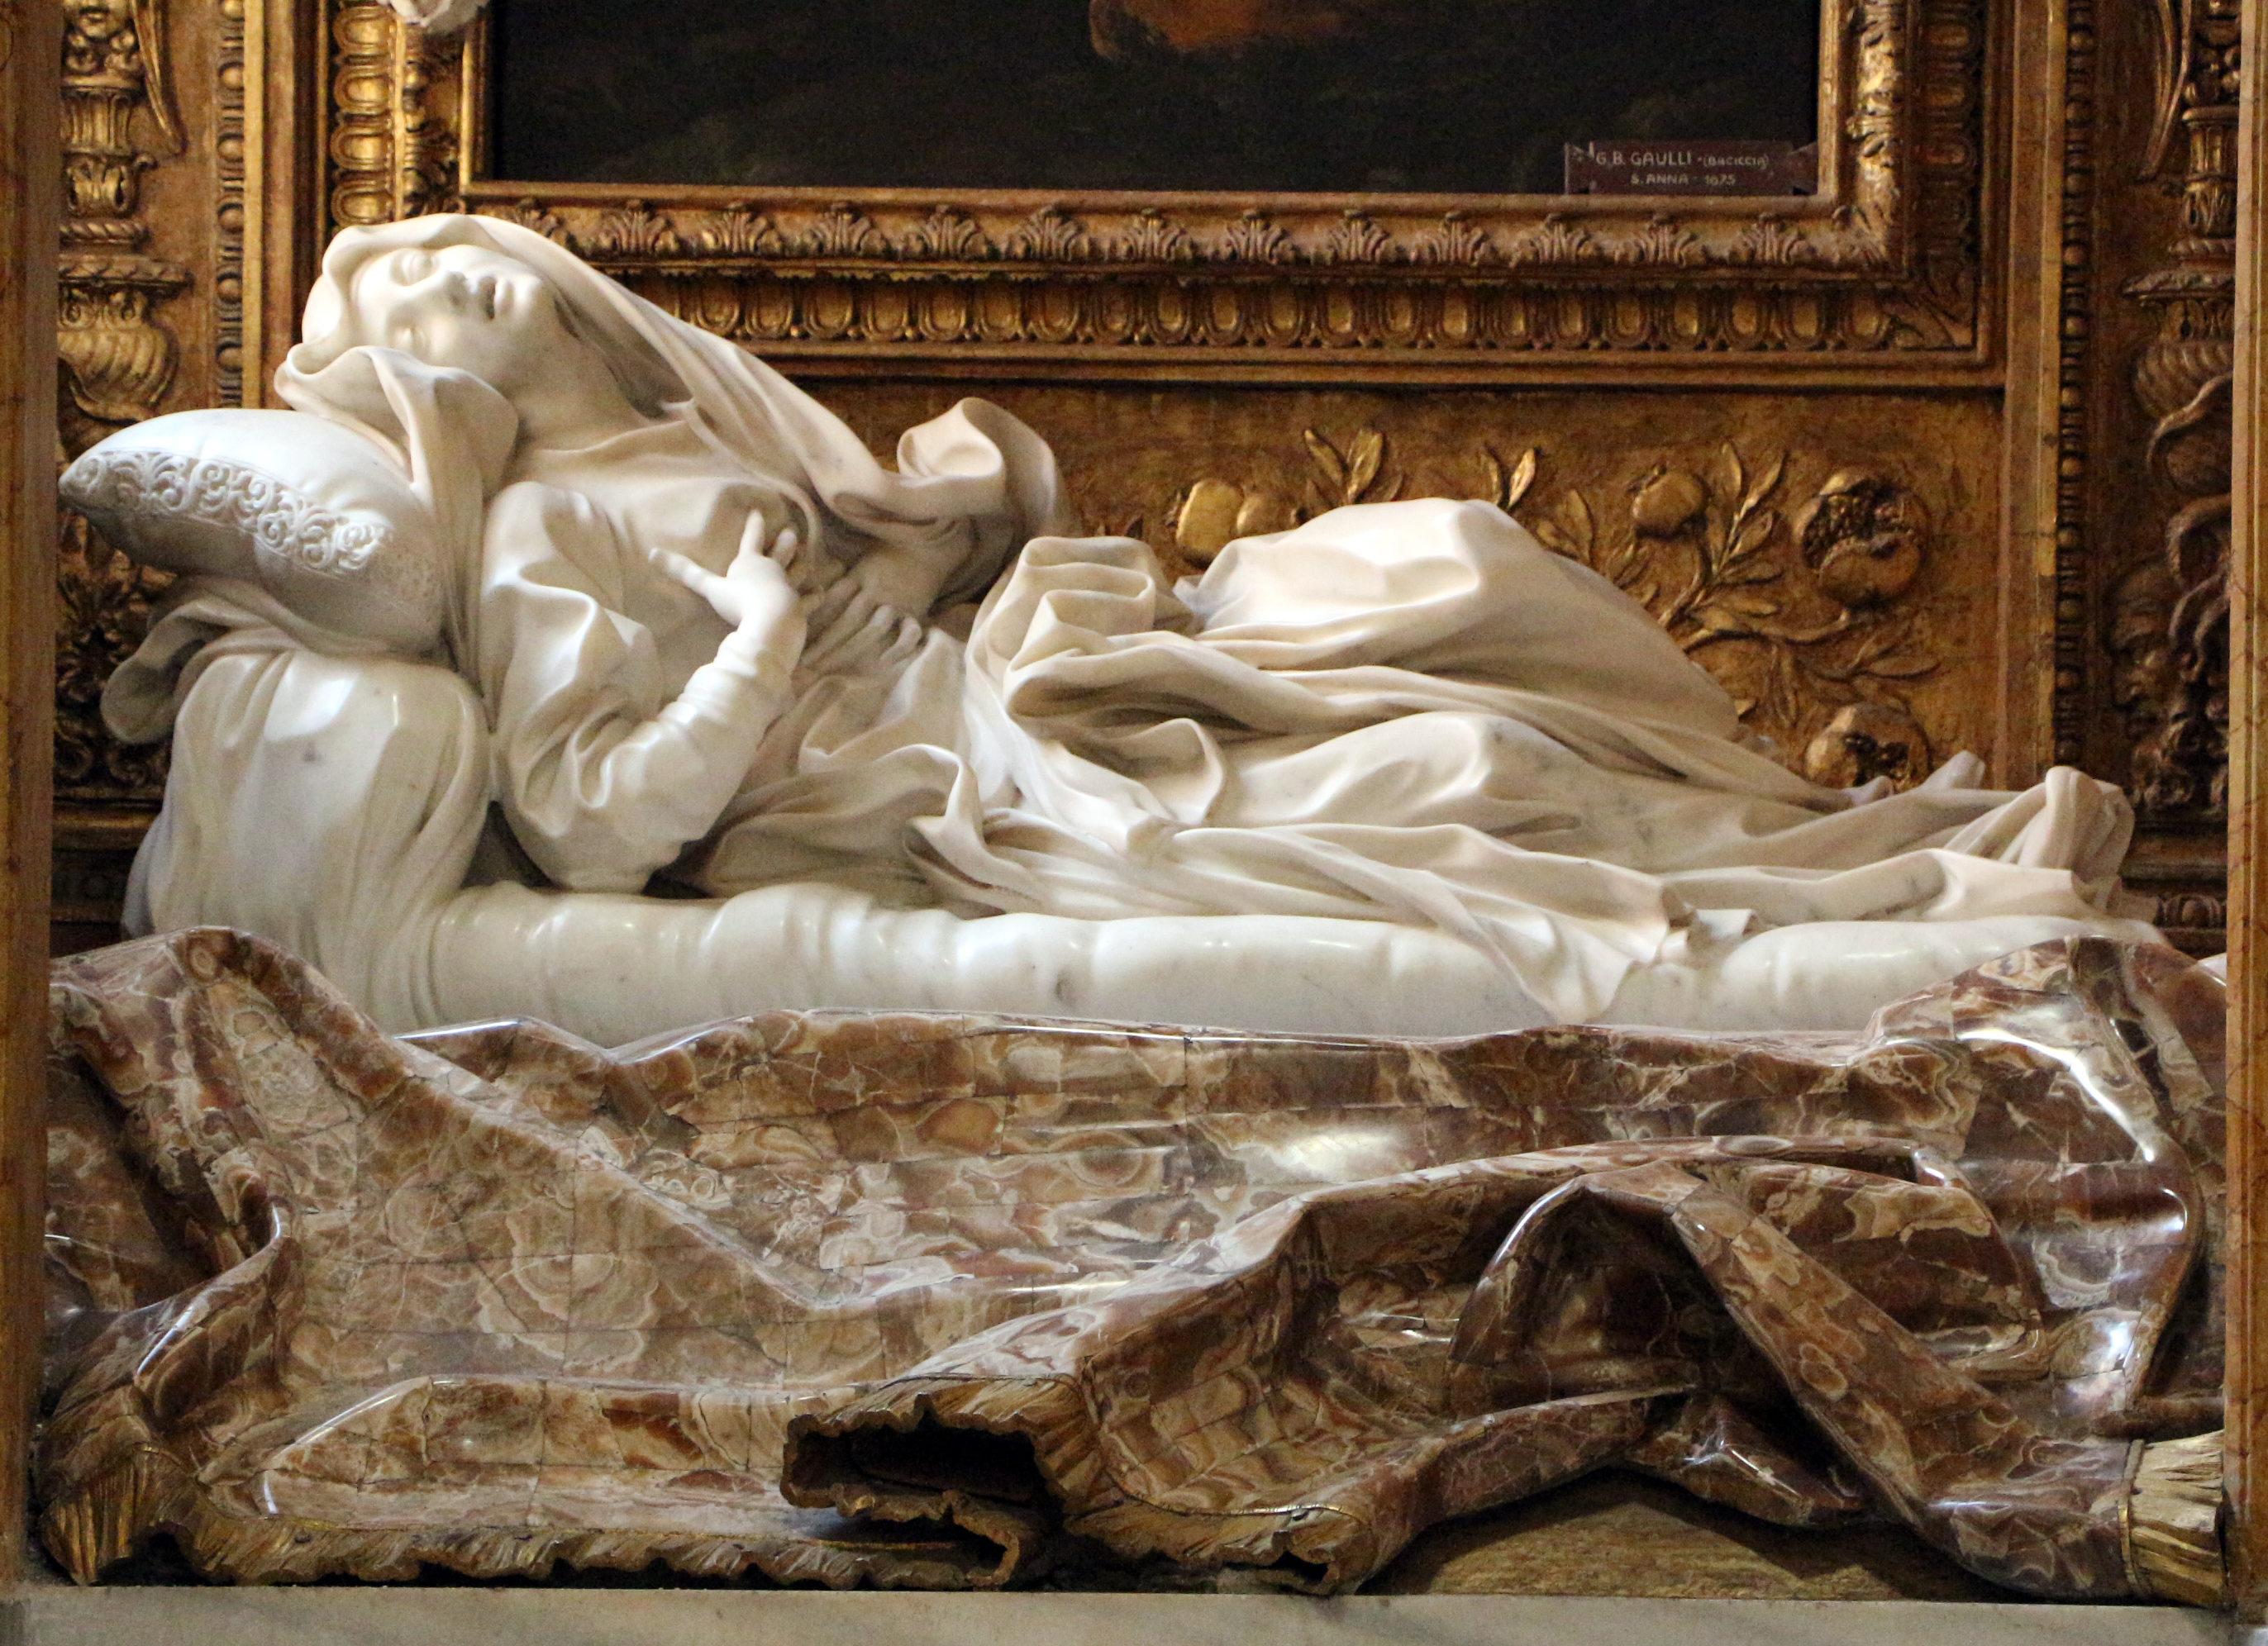 Cappella_palluzzi-albertoni_di_giacomo_mola_(1622-25),_con_beata_ludovica_alberoni_di_bernini_(1671-75)_e_pala_del_baciccio_(s._anna_e_la_vergine)_05.jpg